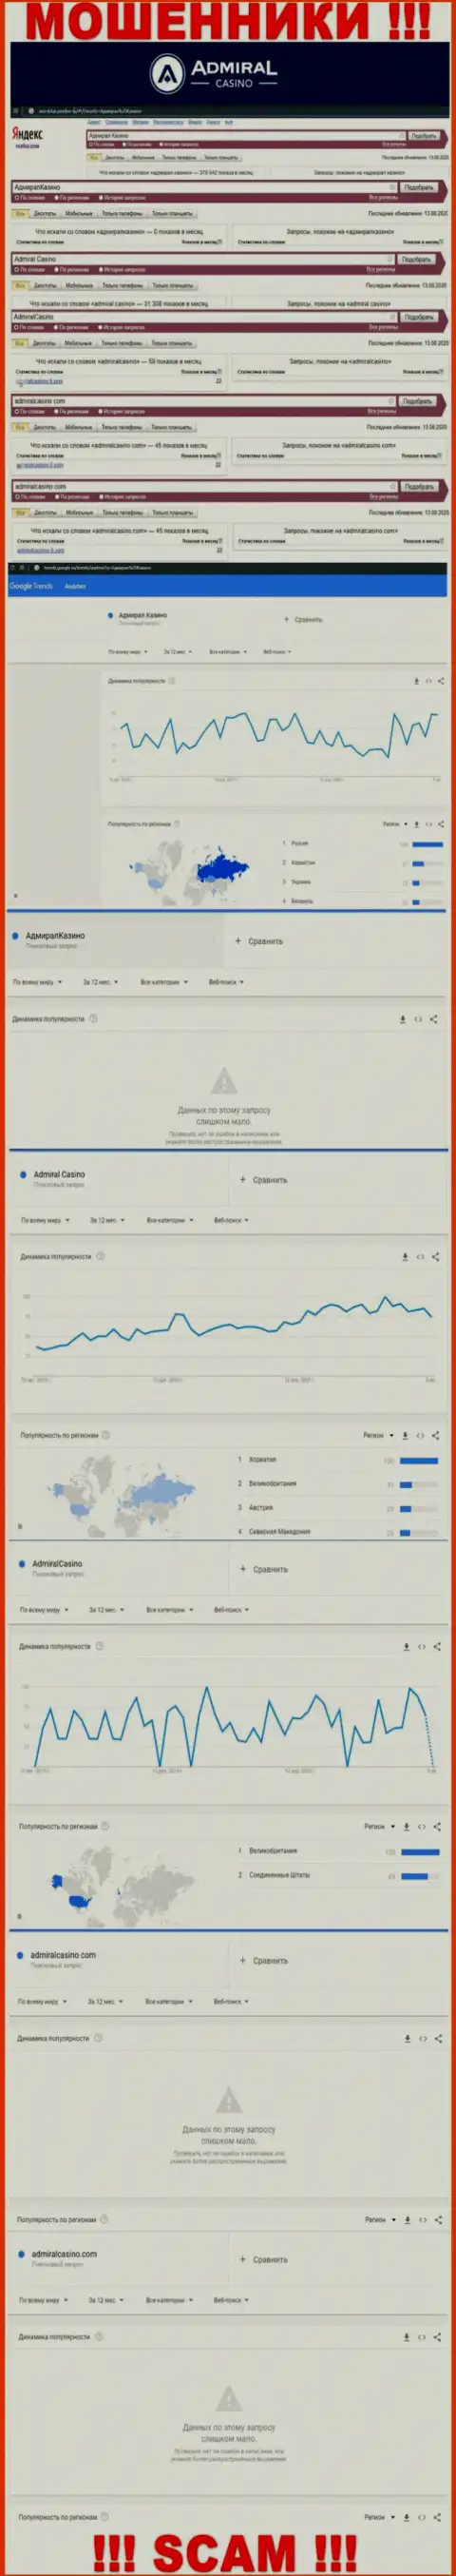 Какое количество людей пытались разыскать сведения об Адмирал Казино - статистика поисковых запросов по указанной компании